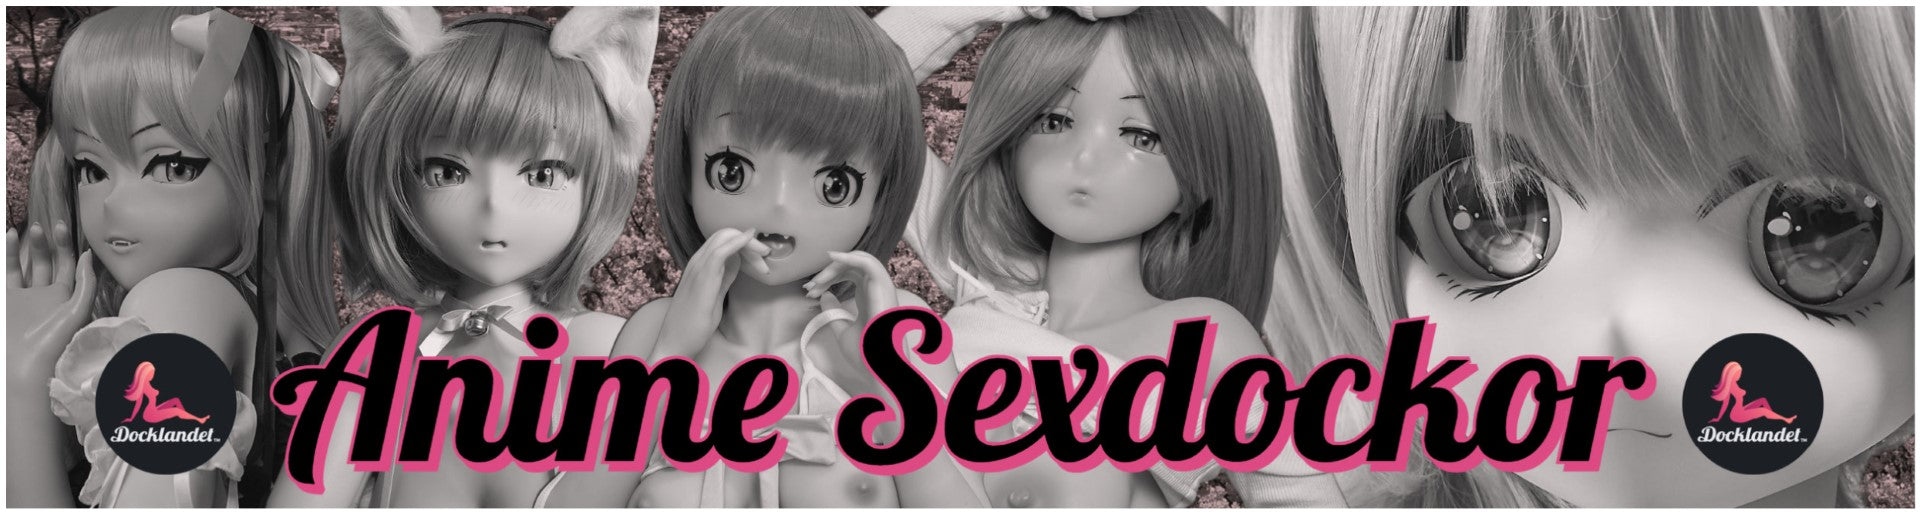 Köp en Anime Sexdocka från Docklandet. Bilden visar en rubrik för anime sexdockor. Om du söker en sexdocka inspirerad av anime och manga så har du hittat rätt, Docklandet säljer fler anime sexdockor med expressleverans. 